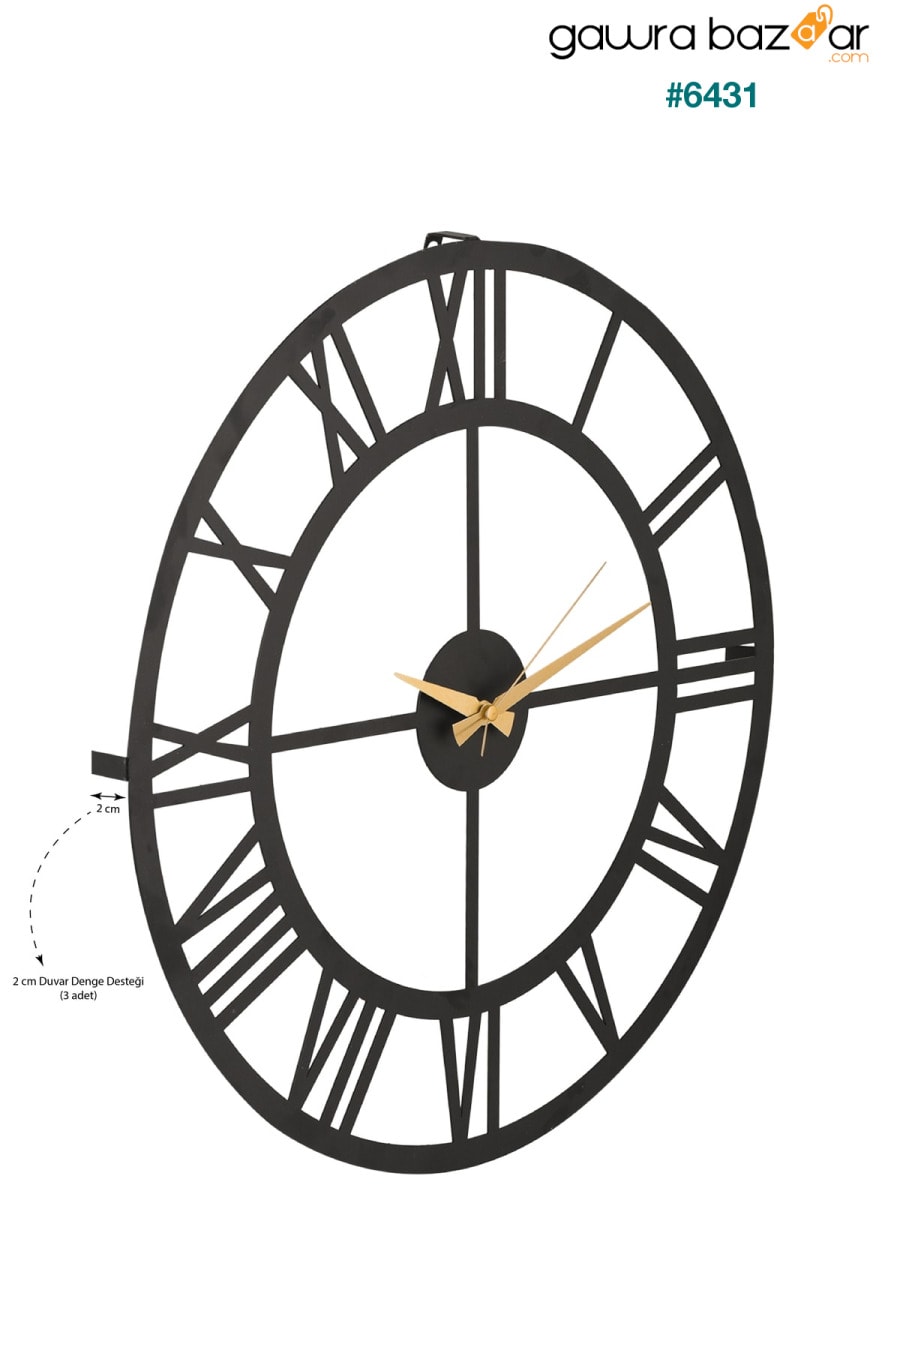 مويكا ساعة حائط معدنية بأرقام رومانية سوداء 50x50 سم Mds-50 Muyika Design 2